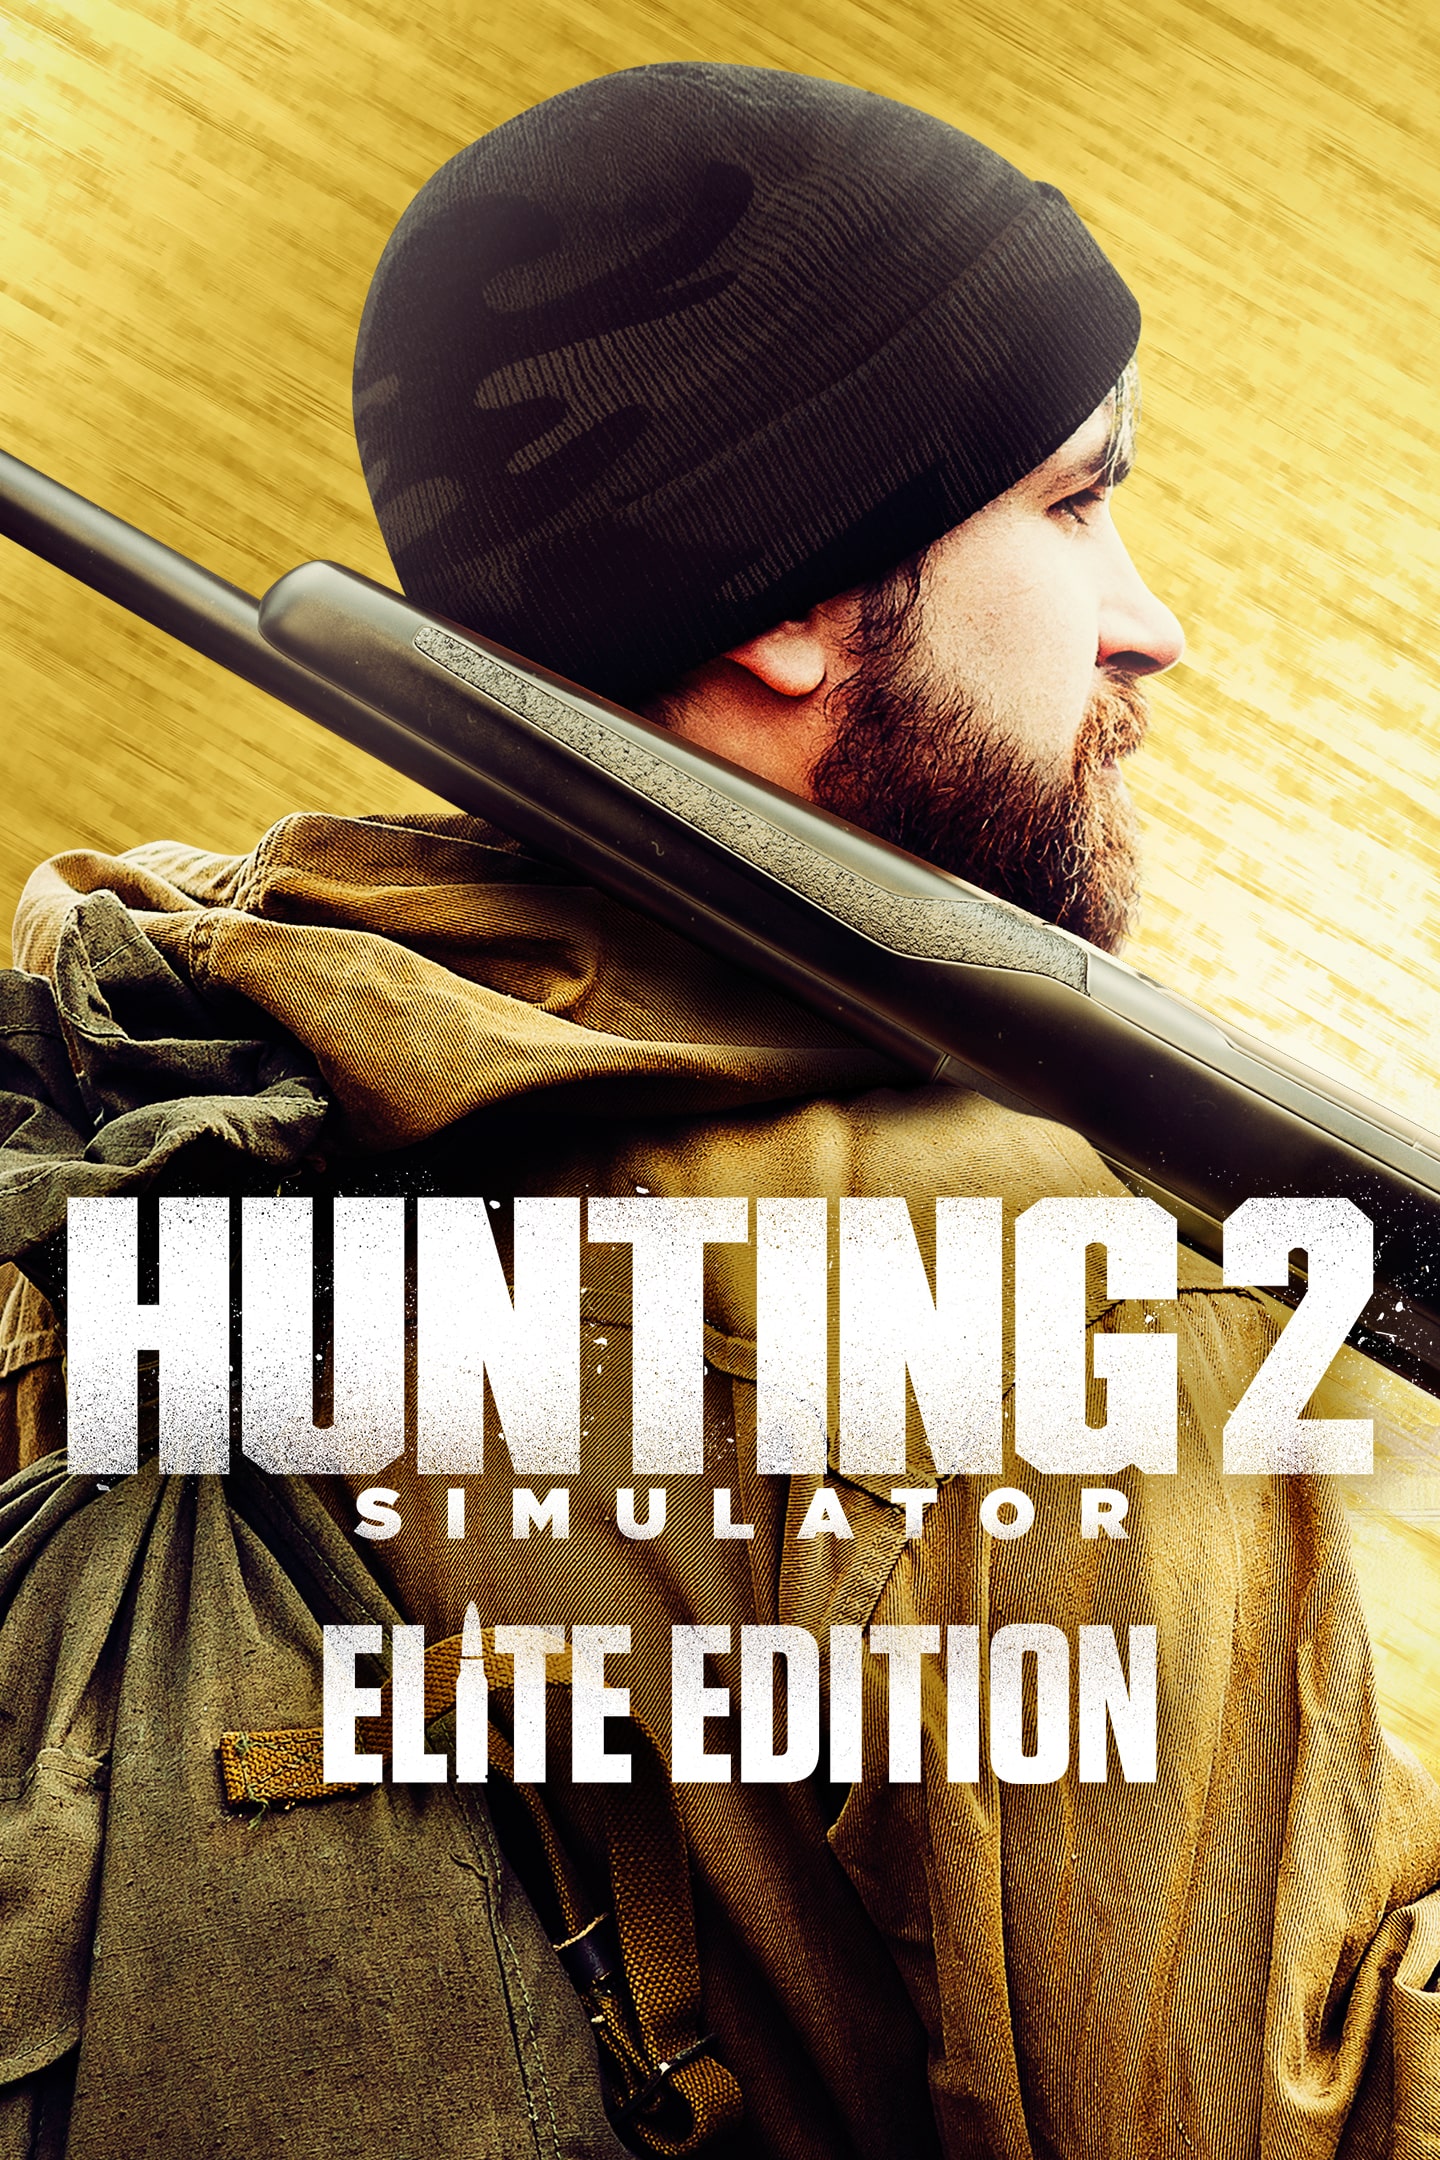 Hunting Simulator 2 PS4 - PlayStation 4 : : Videogiochi